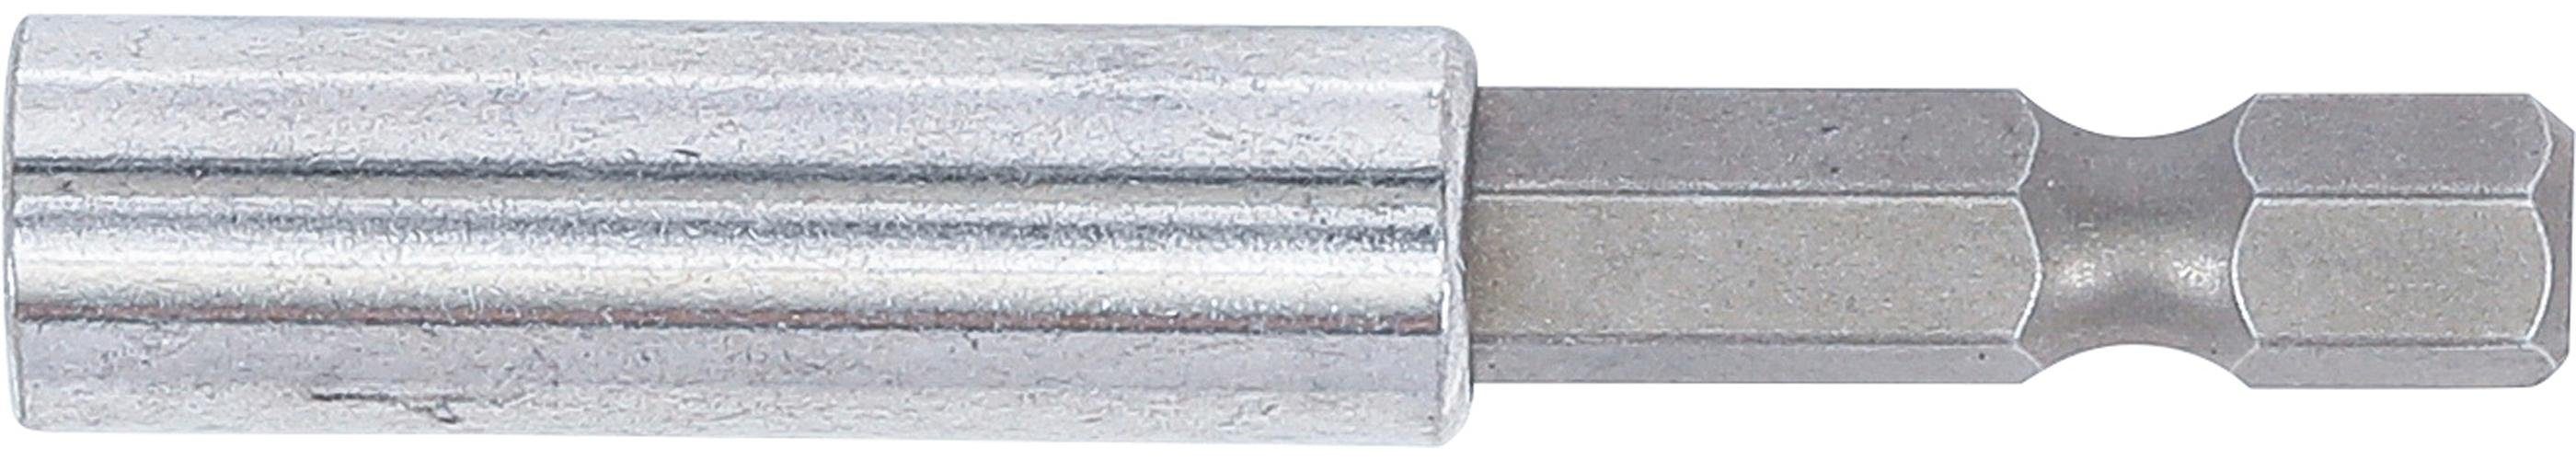 Bithalter, (1/4), 60 technic Außensechskant Abtrieb Ratschenringschlüssel BGS mm 6,3 mm Magnetischer